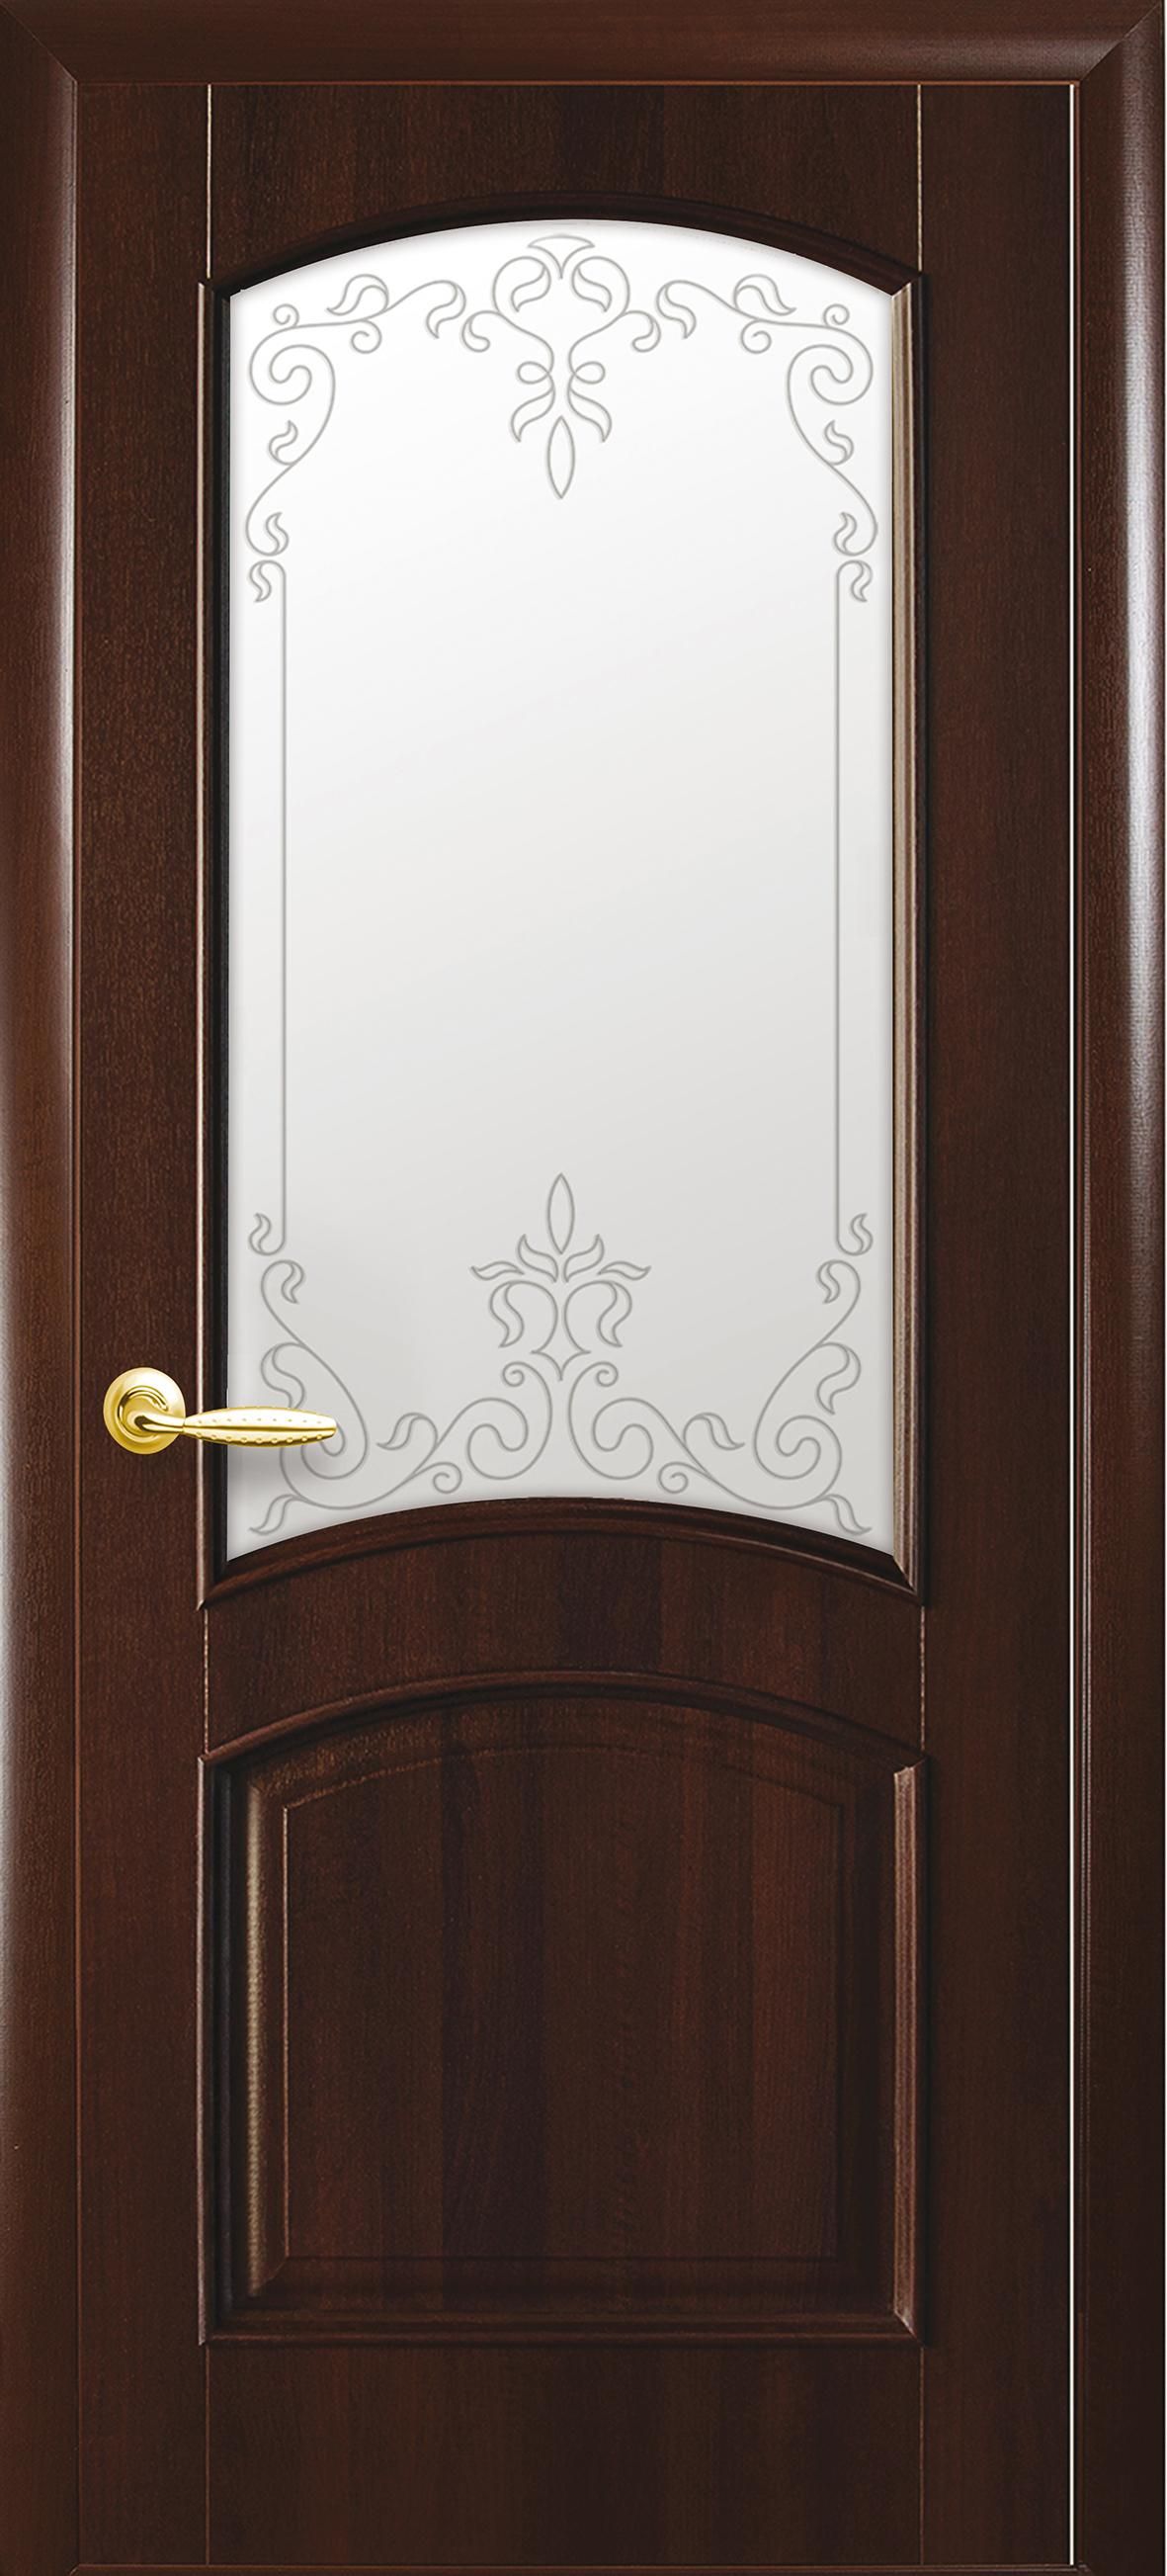 Межкомнатные двери Антре со стеклом сатин и рисунком Р2